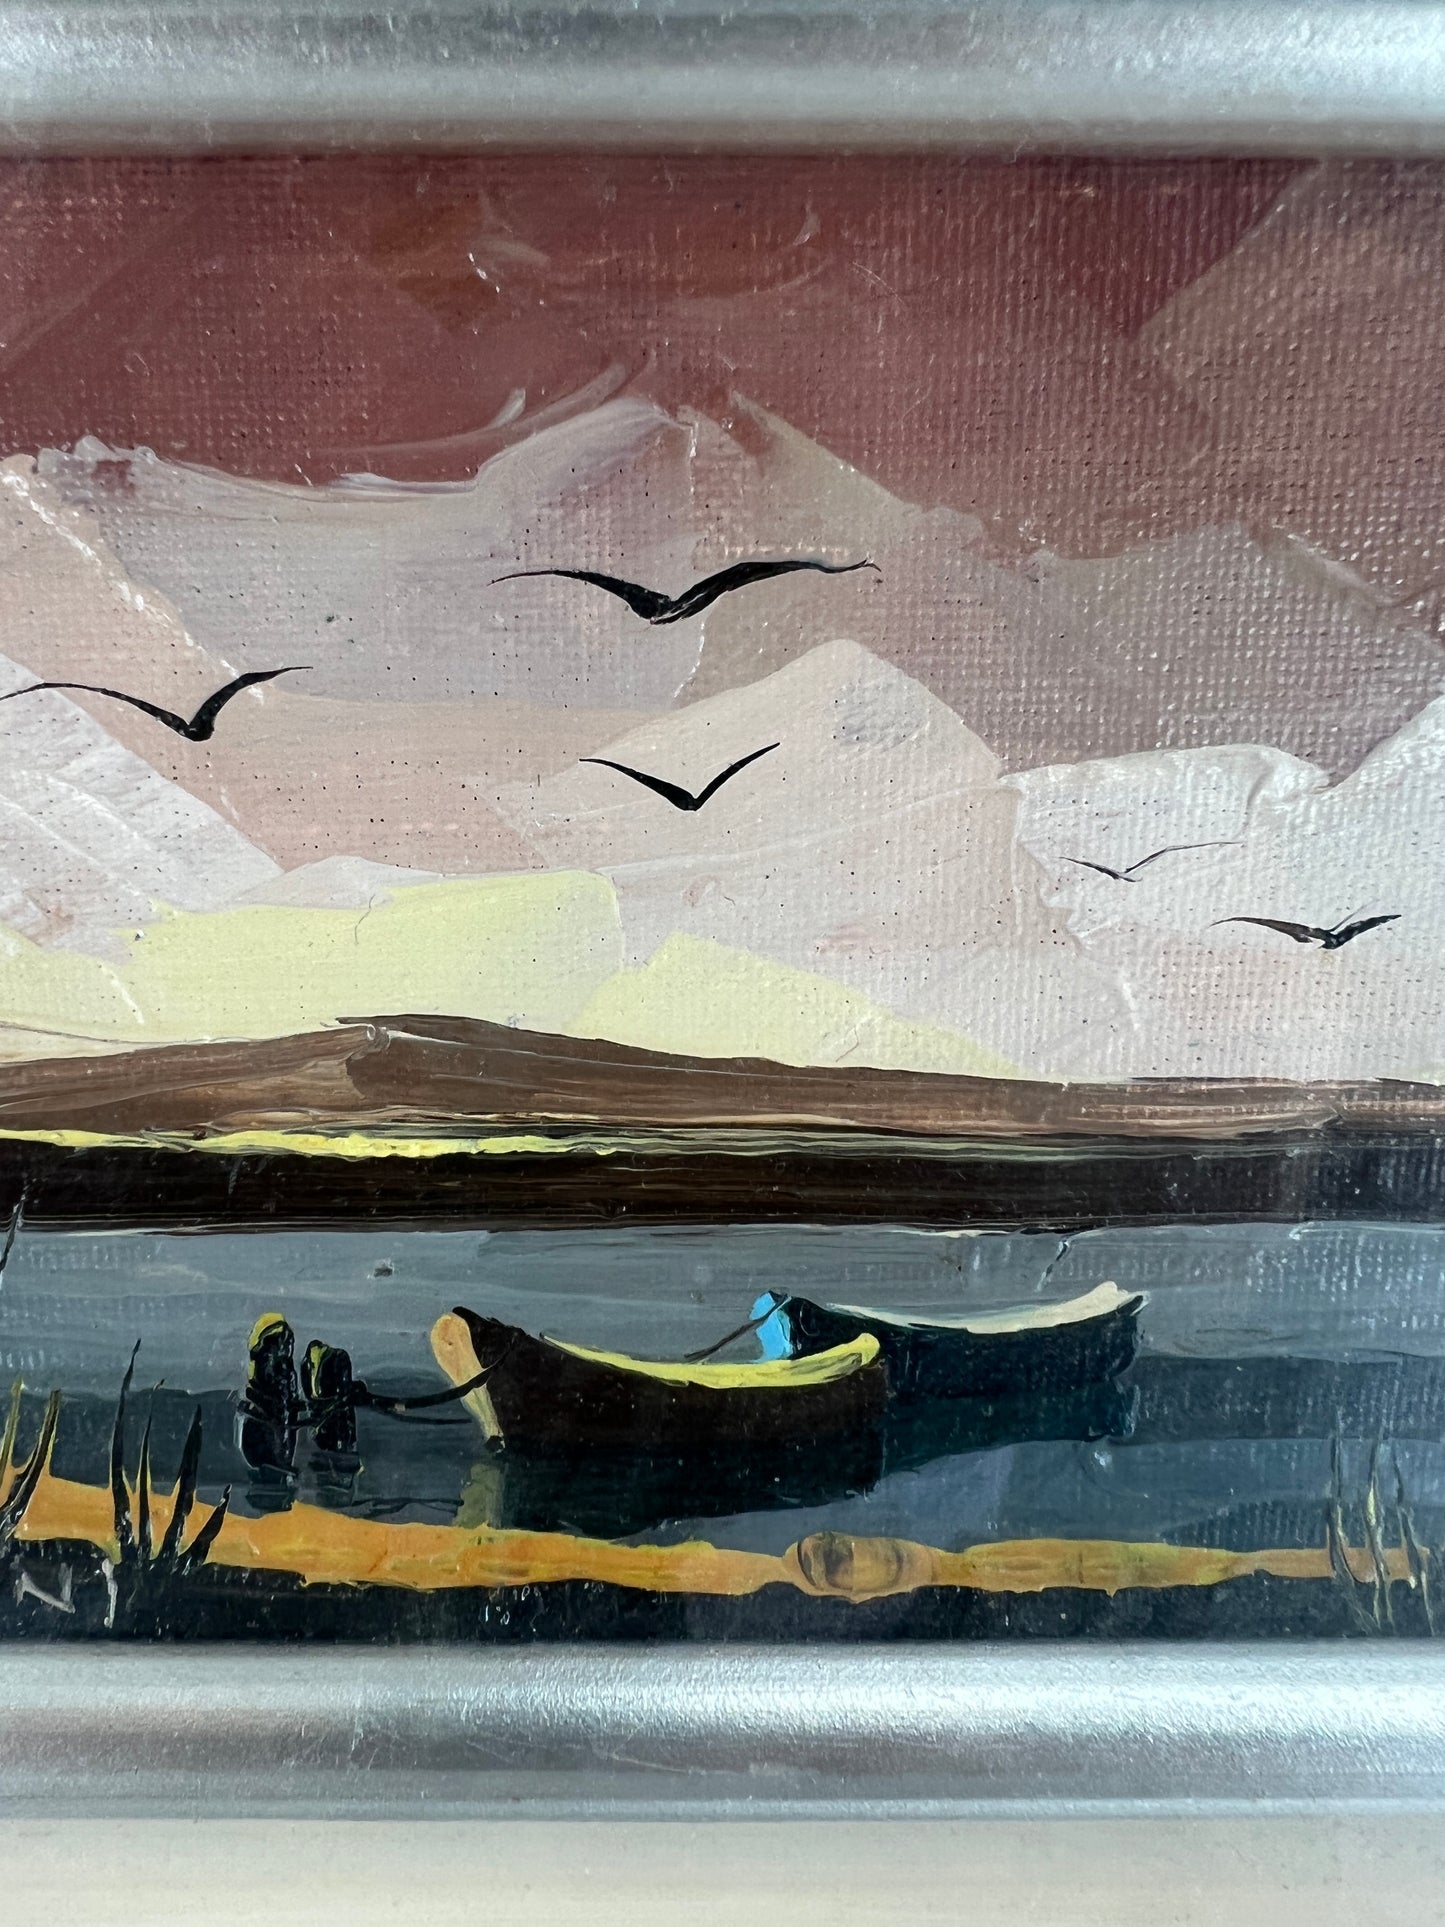 Gemälde "Boote am Ufer" - 29x34 cm